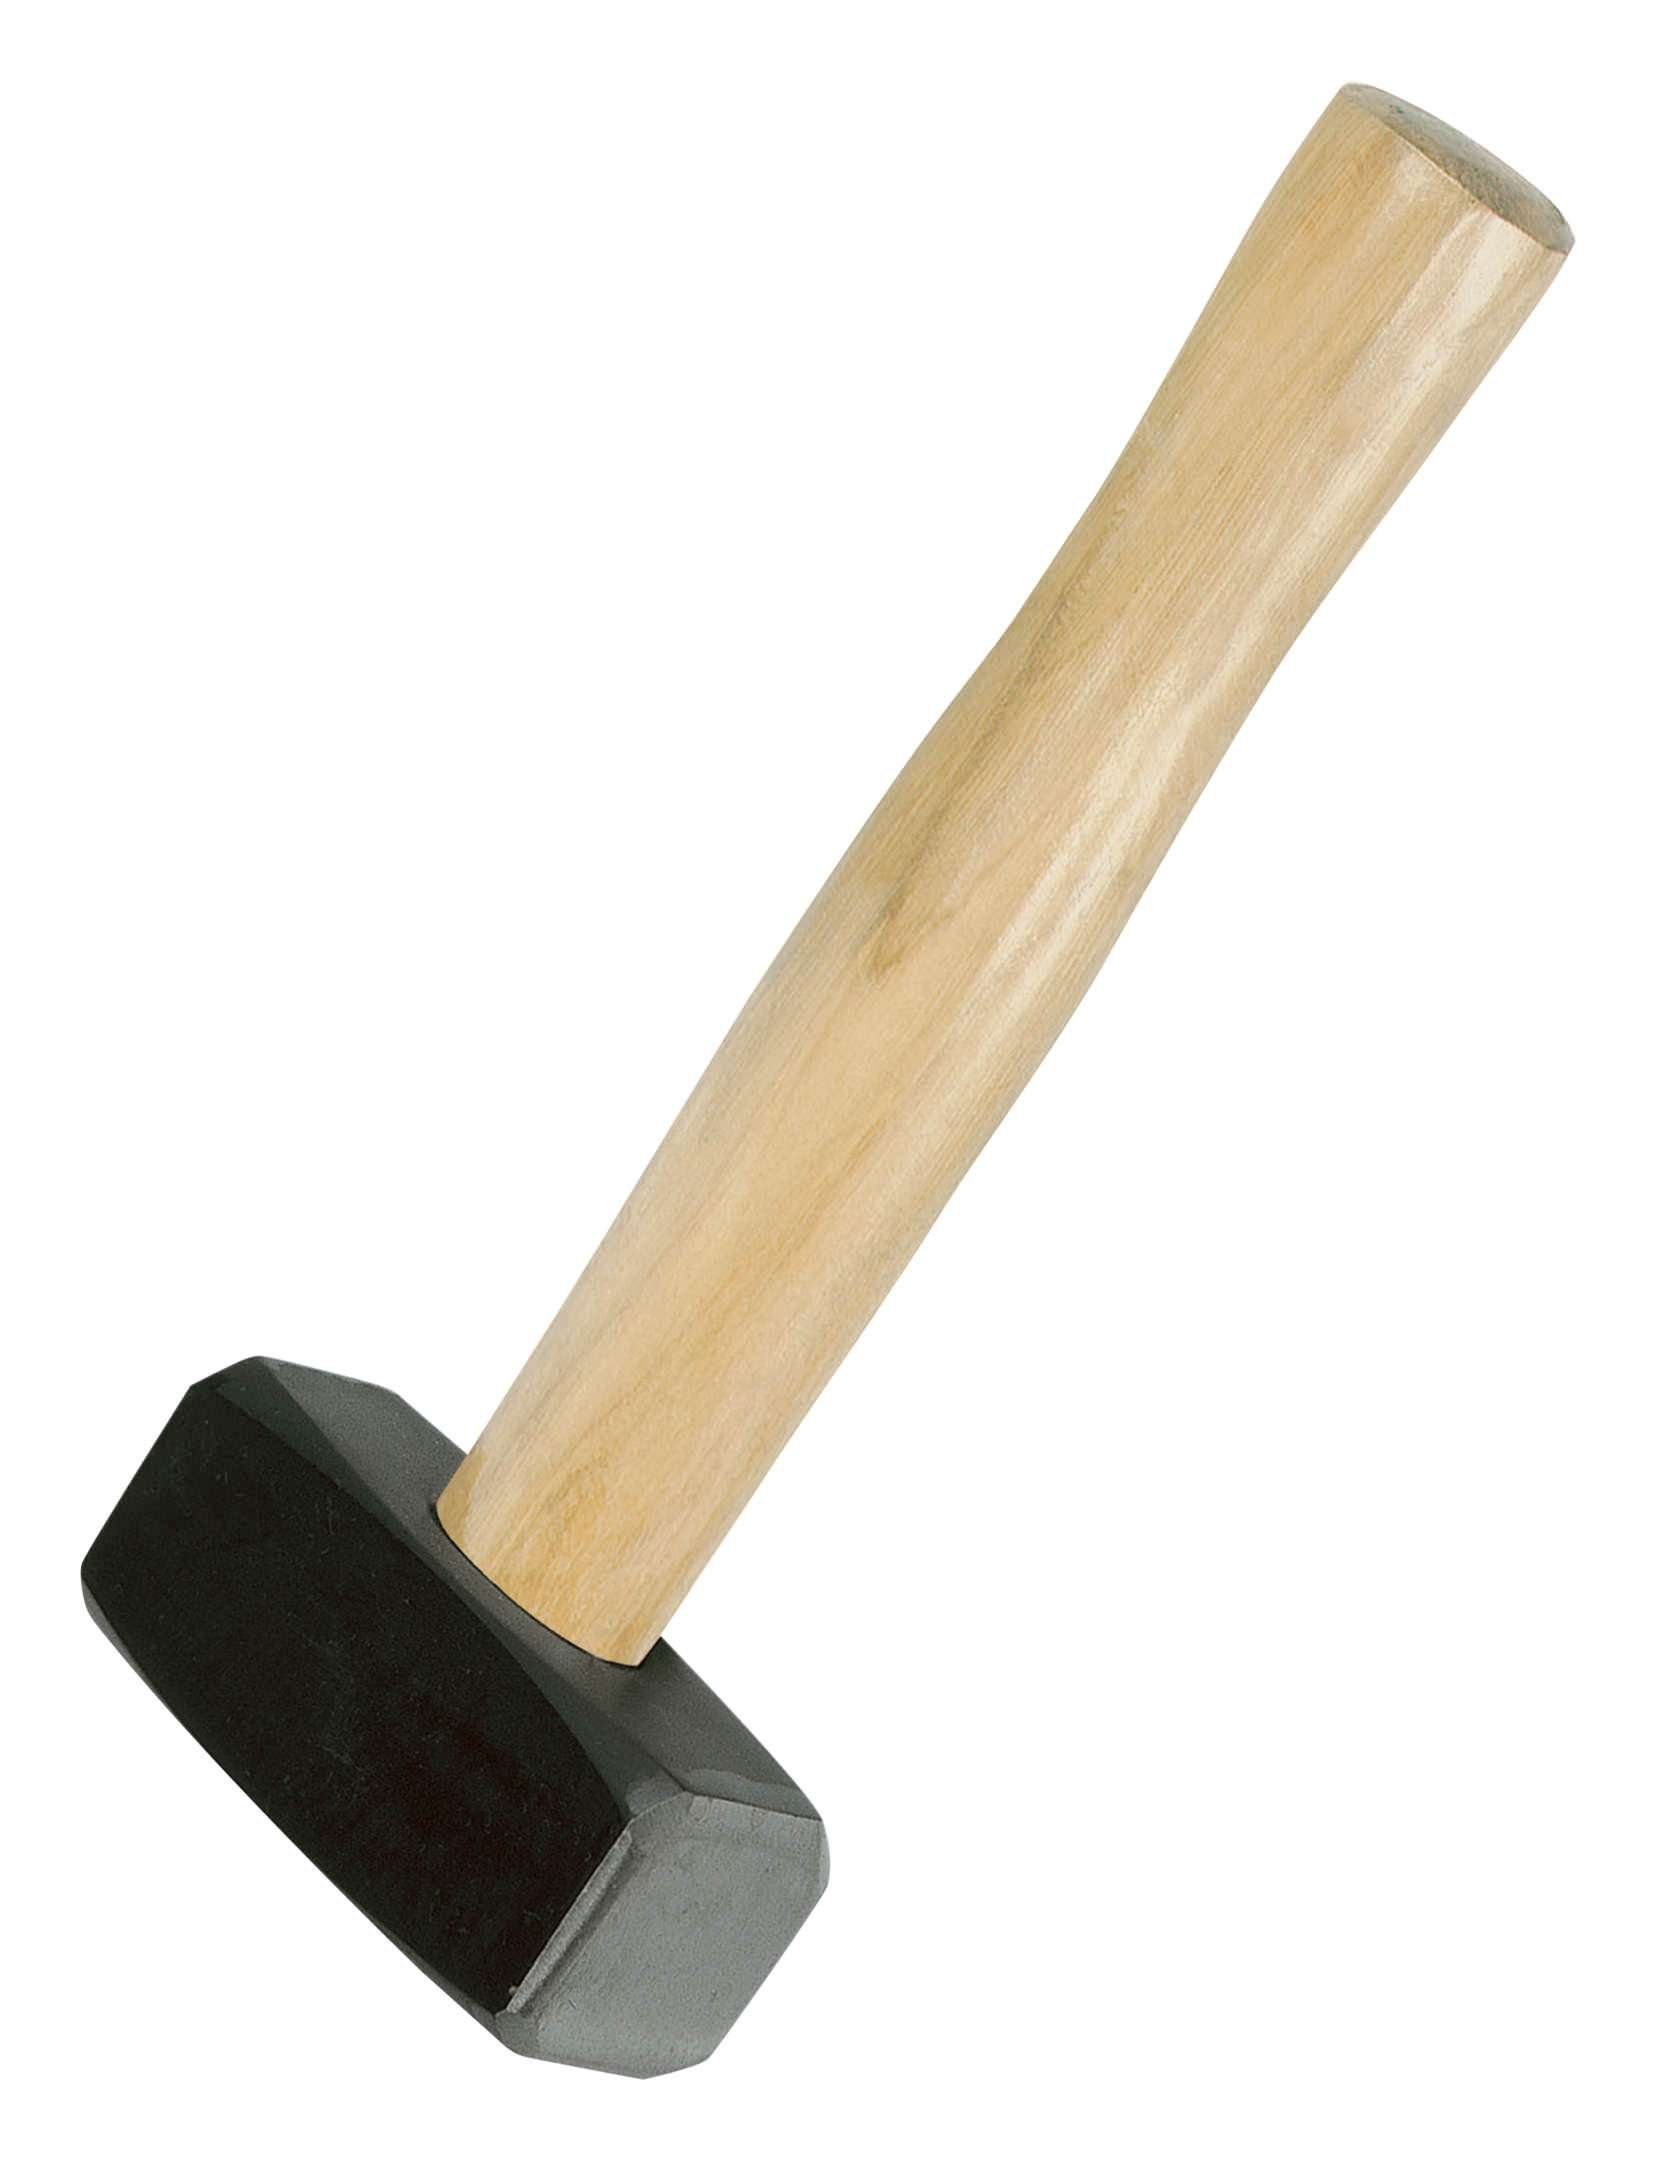 IDEALSPATEN Hammer, Handfäustel g 1500